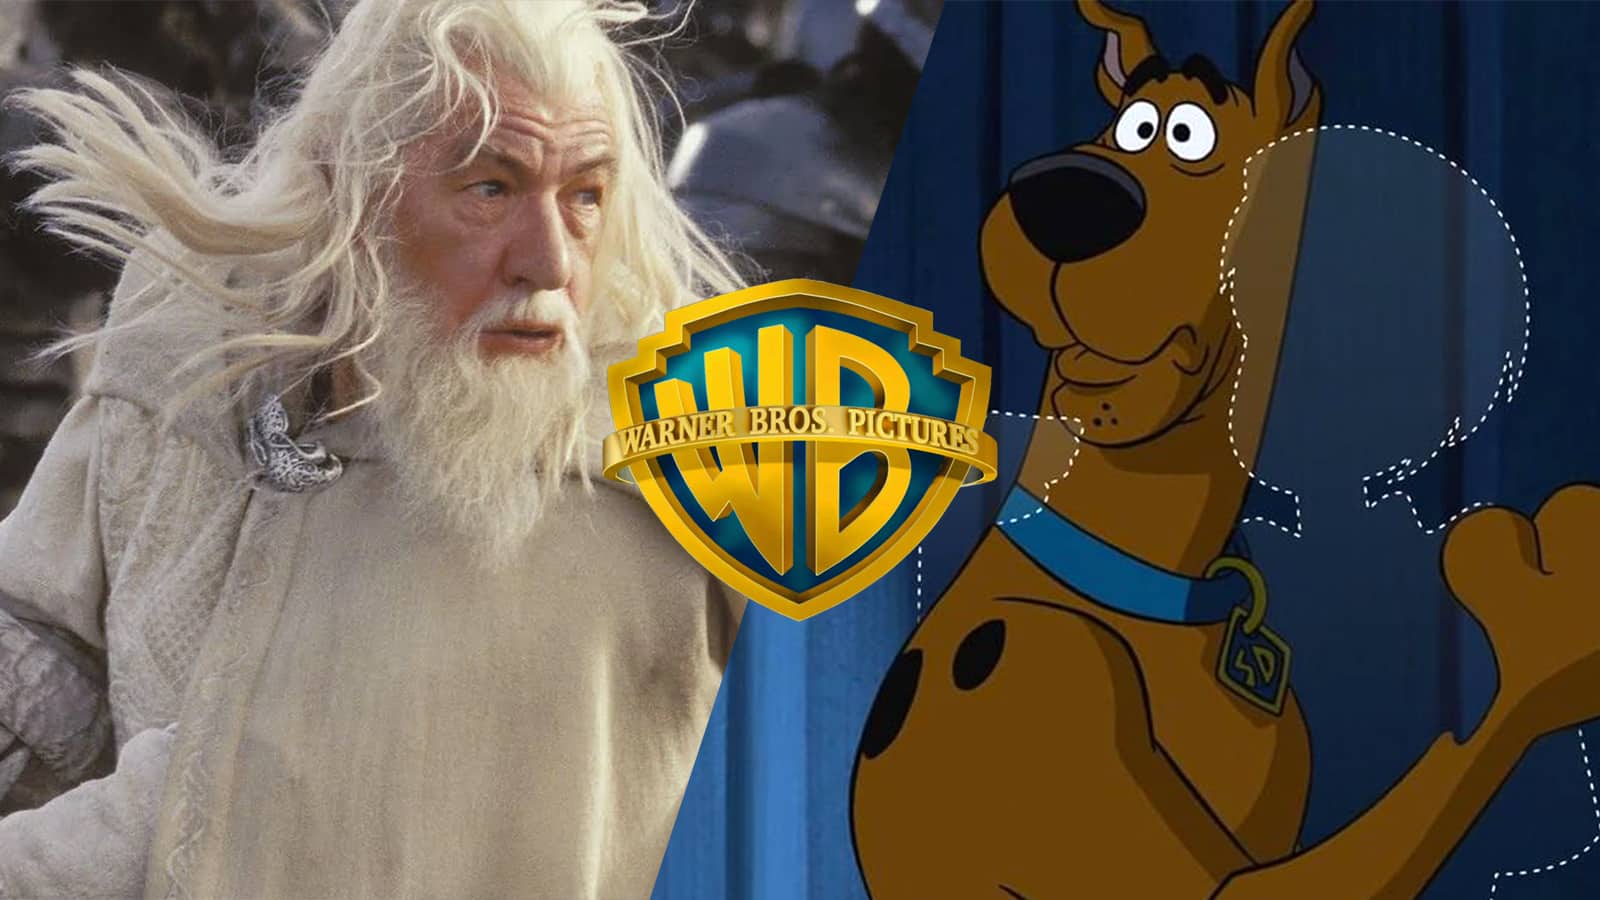 Pentagram revamps Warner Bros' historic shield emblem